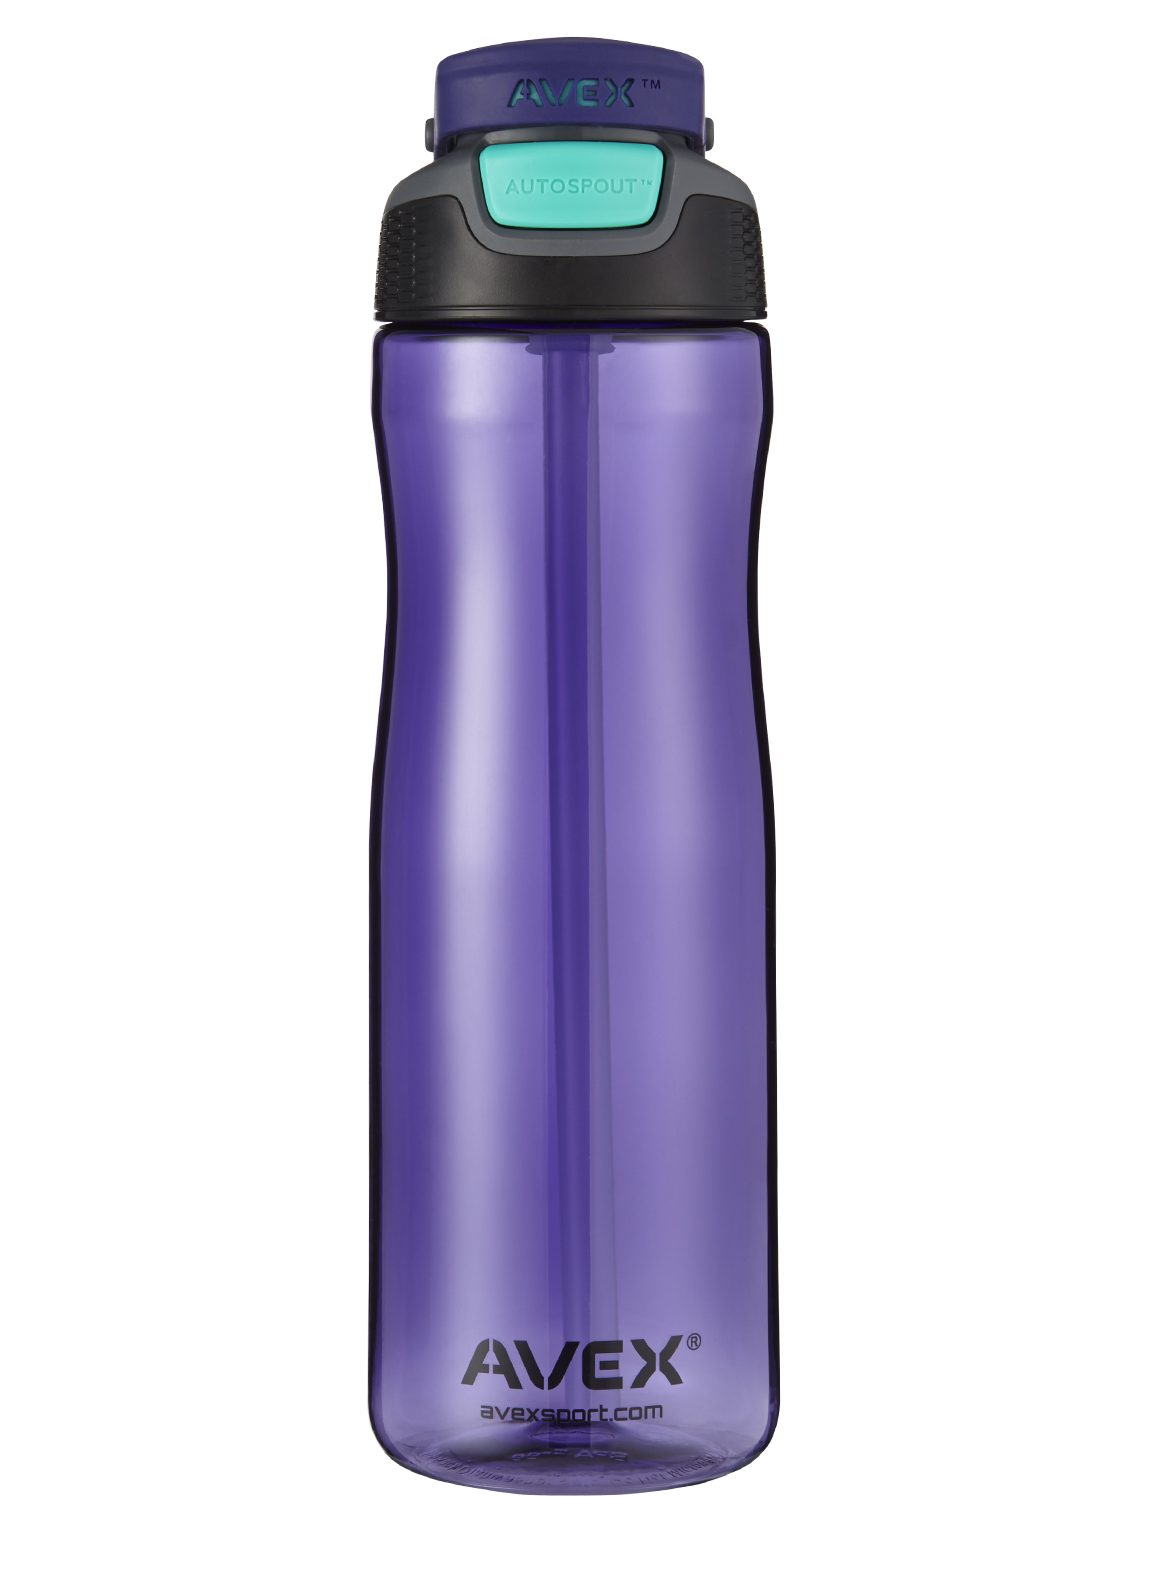 Avex Autospout Water Bottles